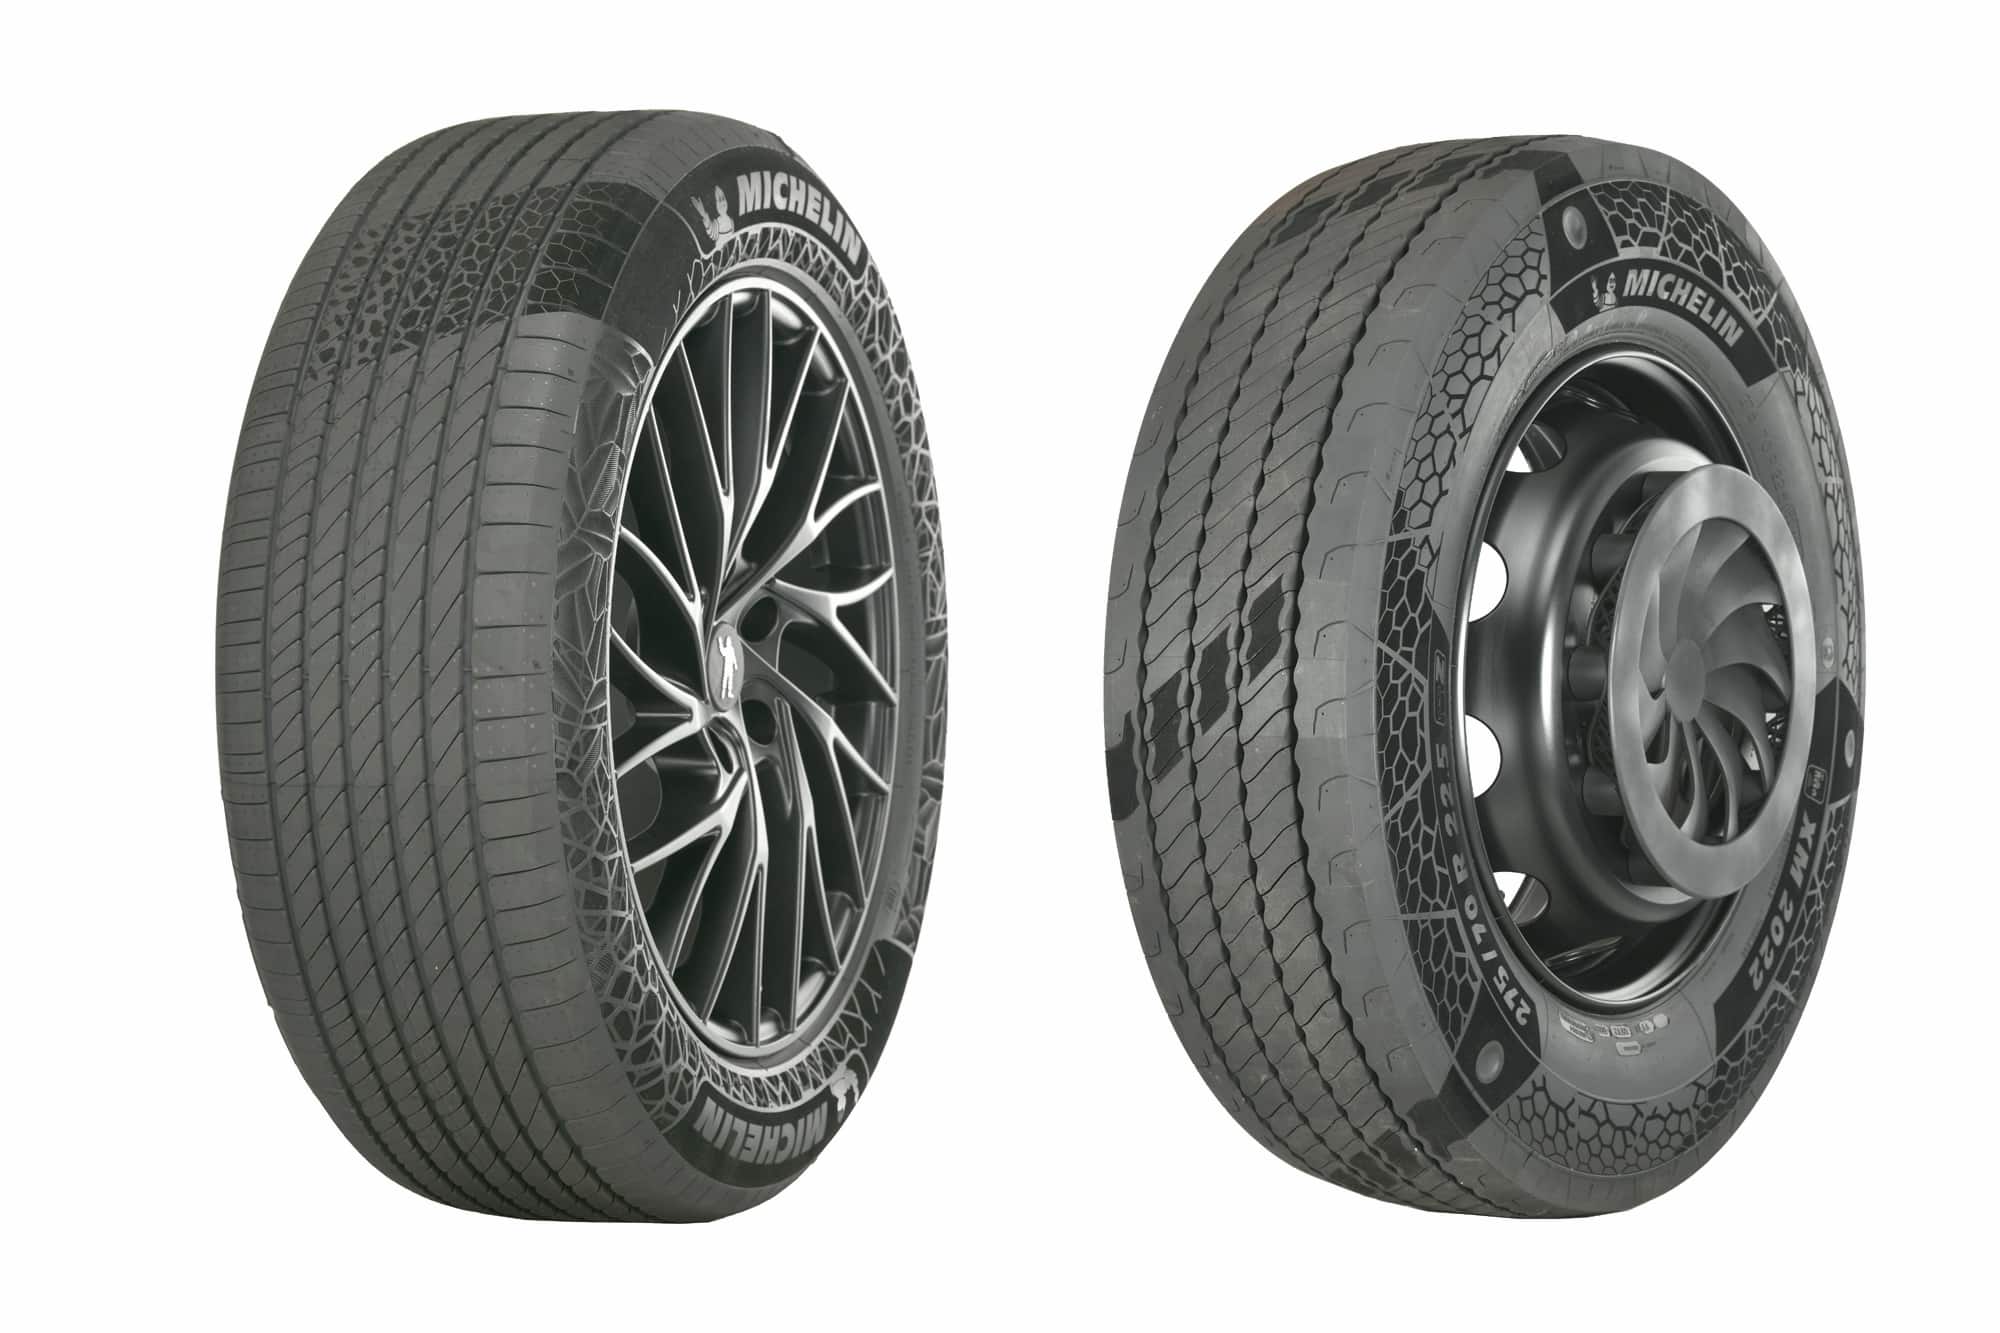 Michelin presenta dos nuevos neumáticos sostenibles